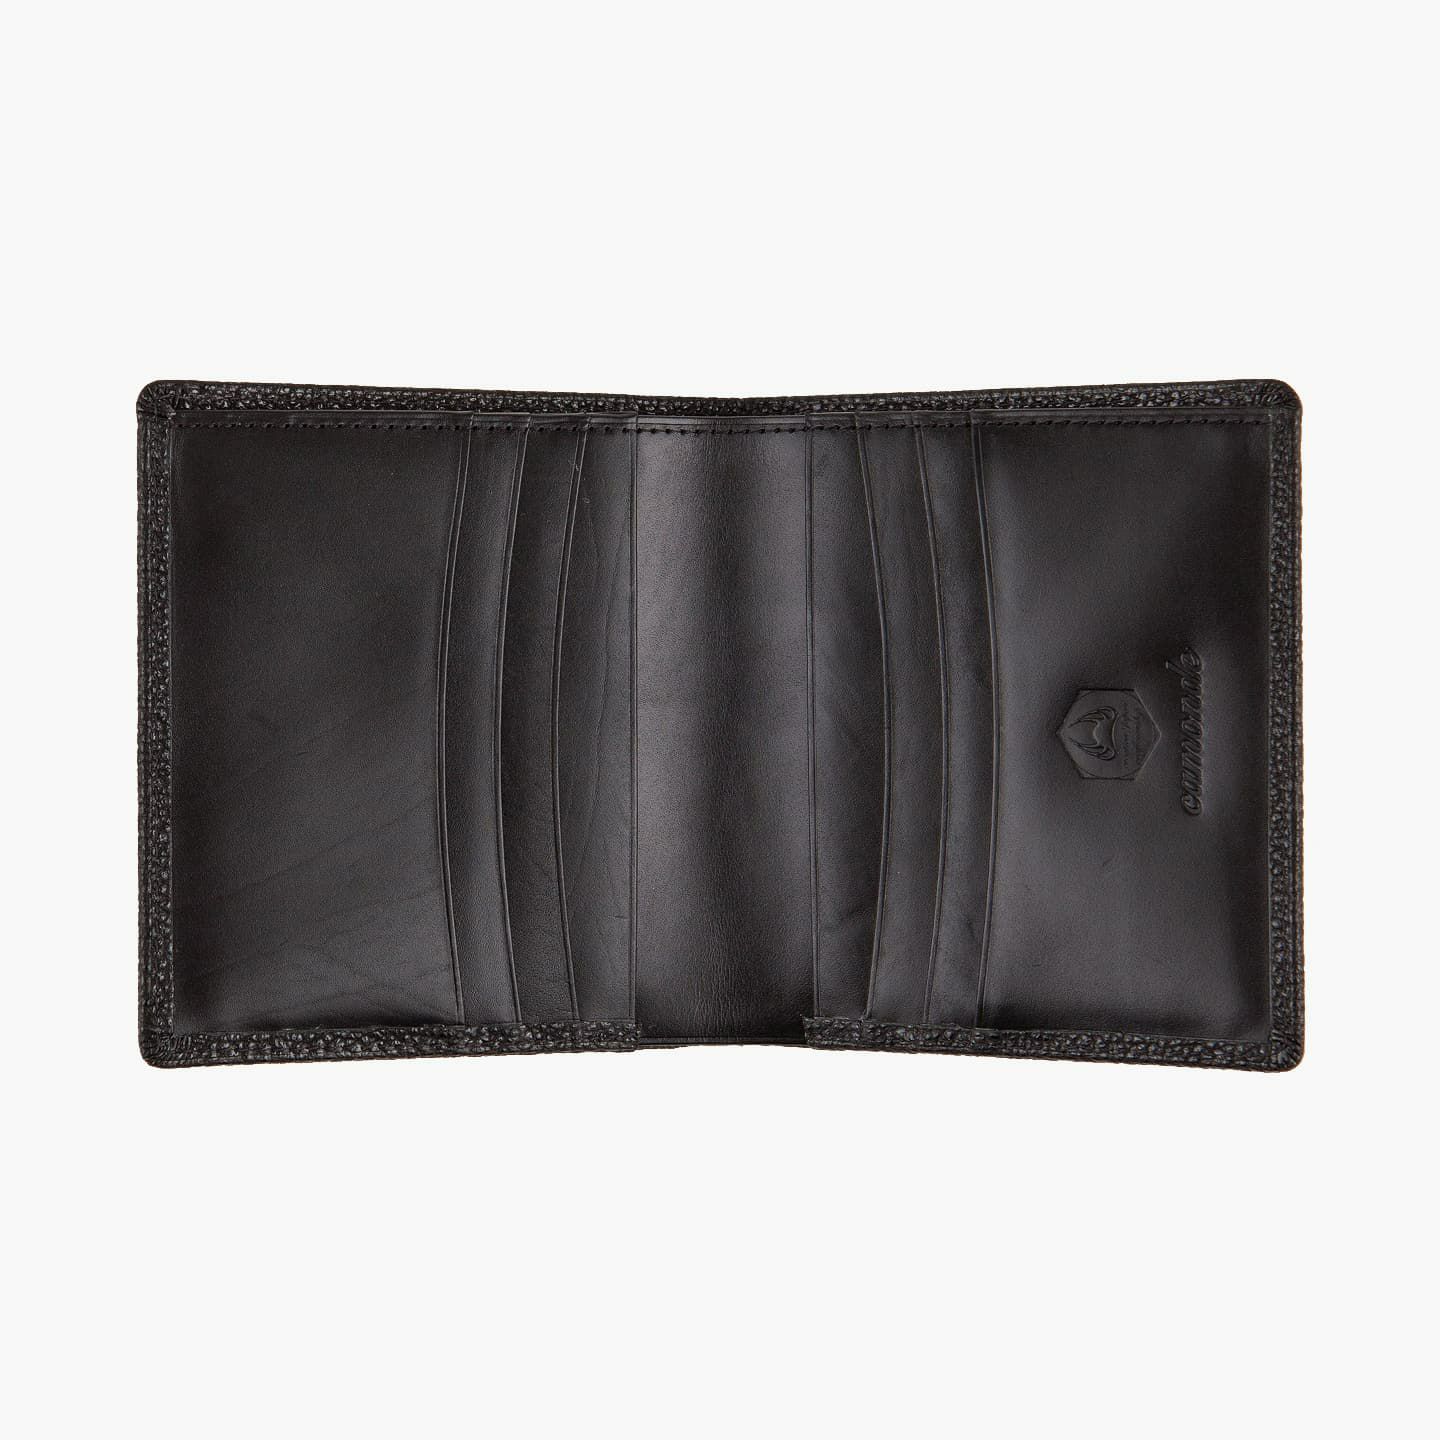 黒桟革 二つ折り財布 | 大人のバッグ・財布・ 二つ折り財布 など拘りの 